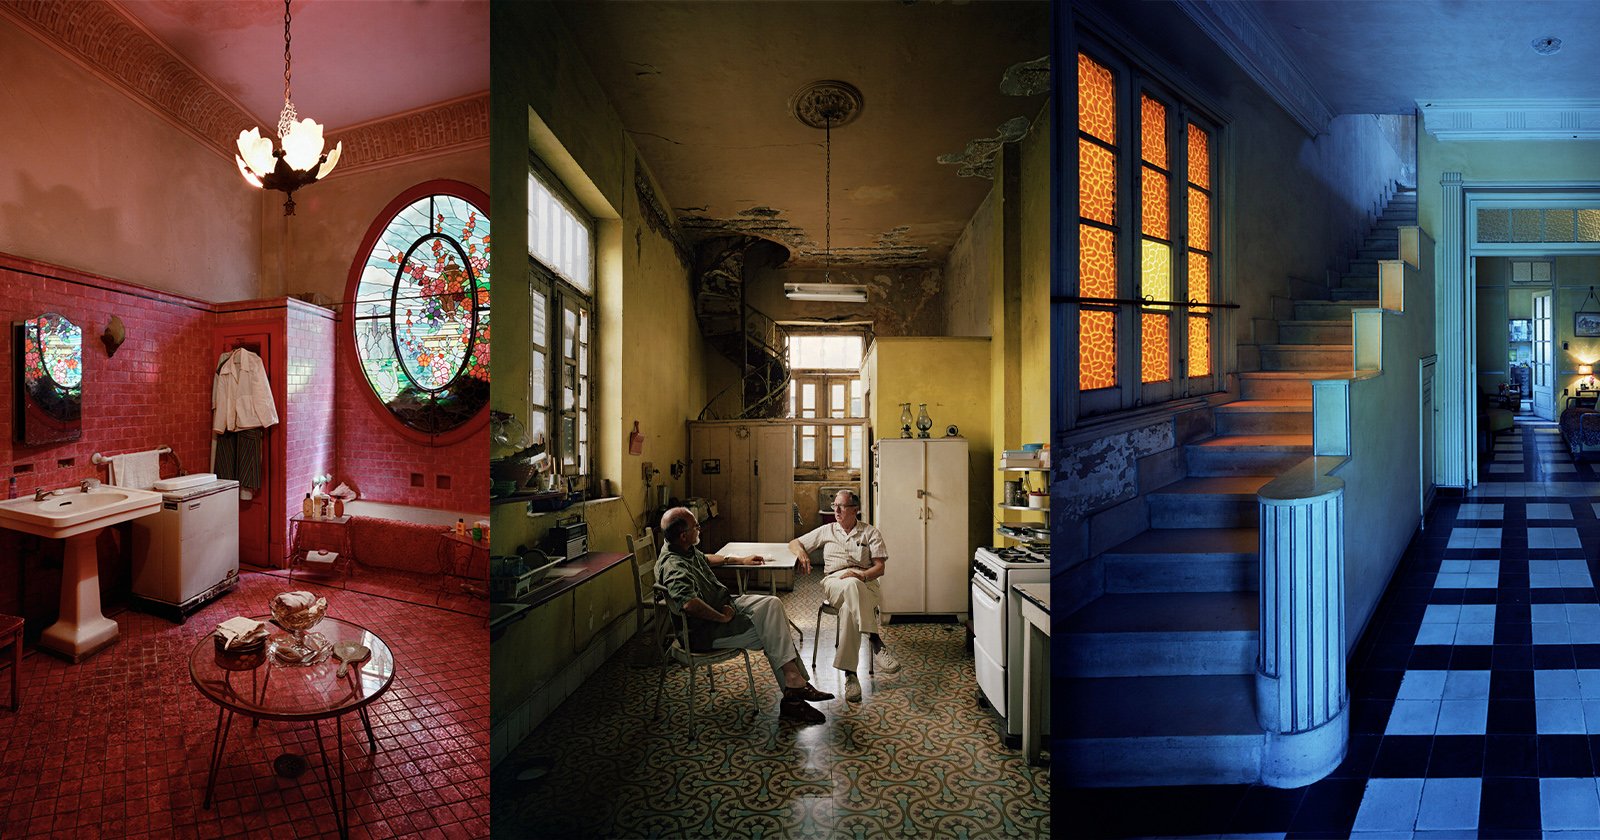 Vibrant Cuban interiors